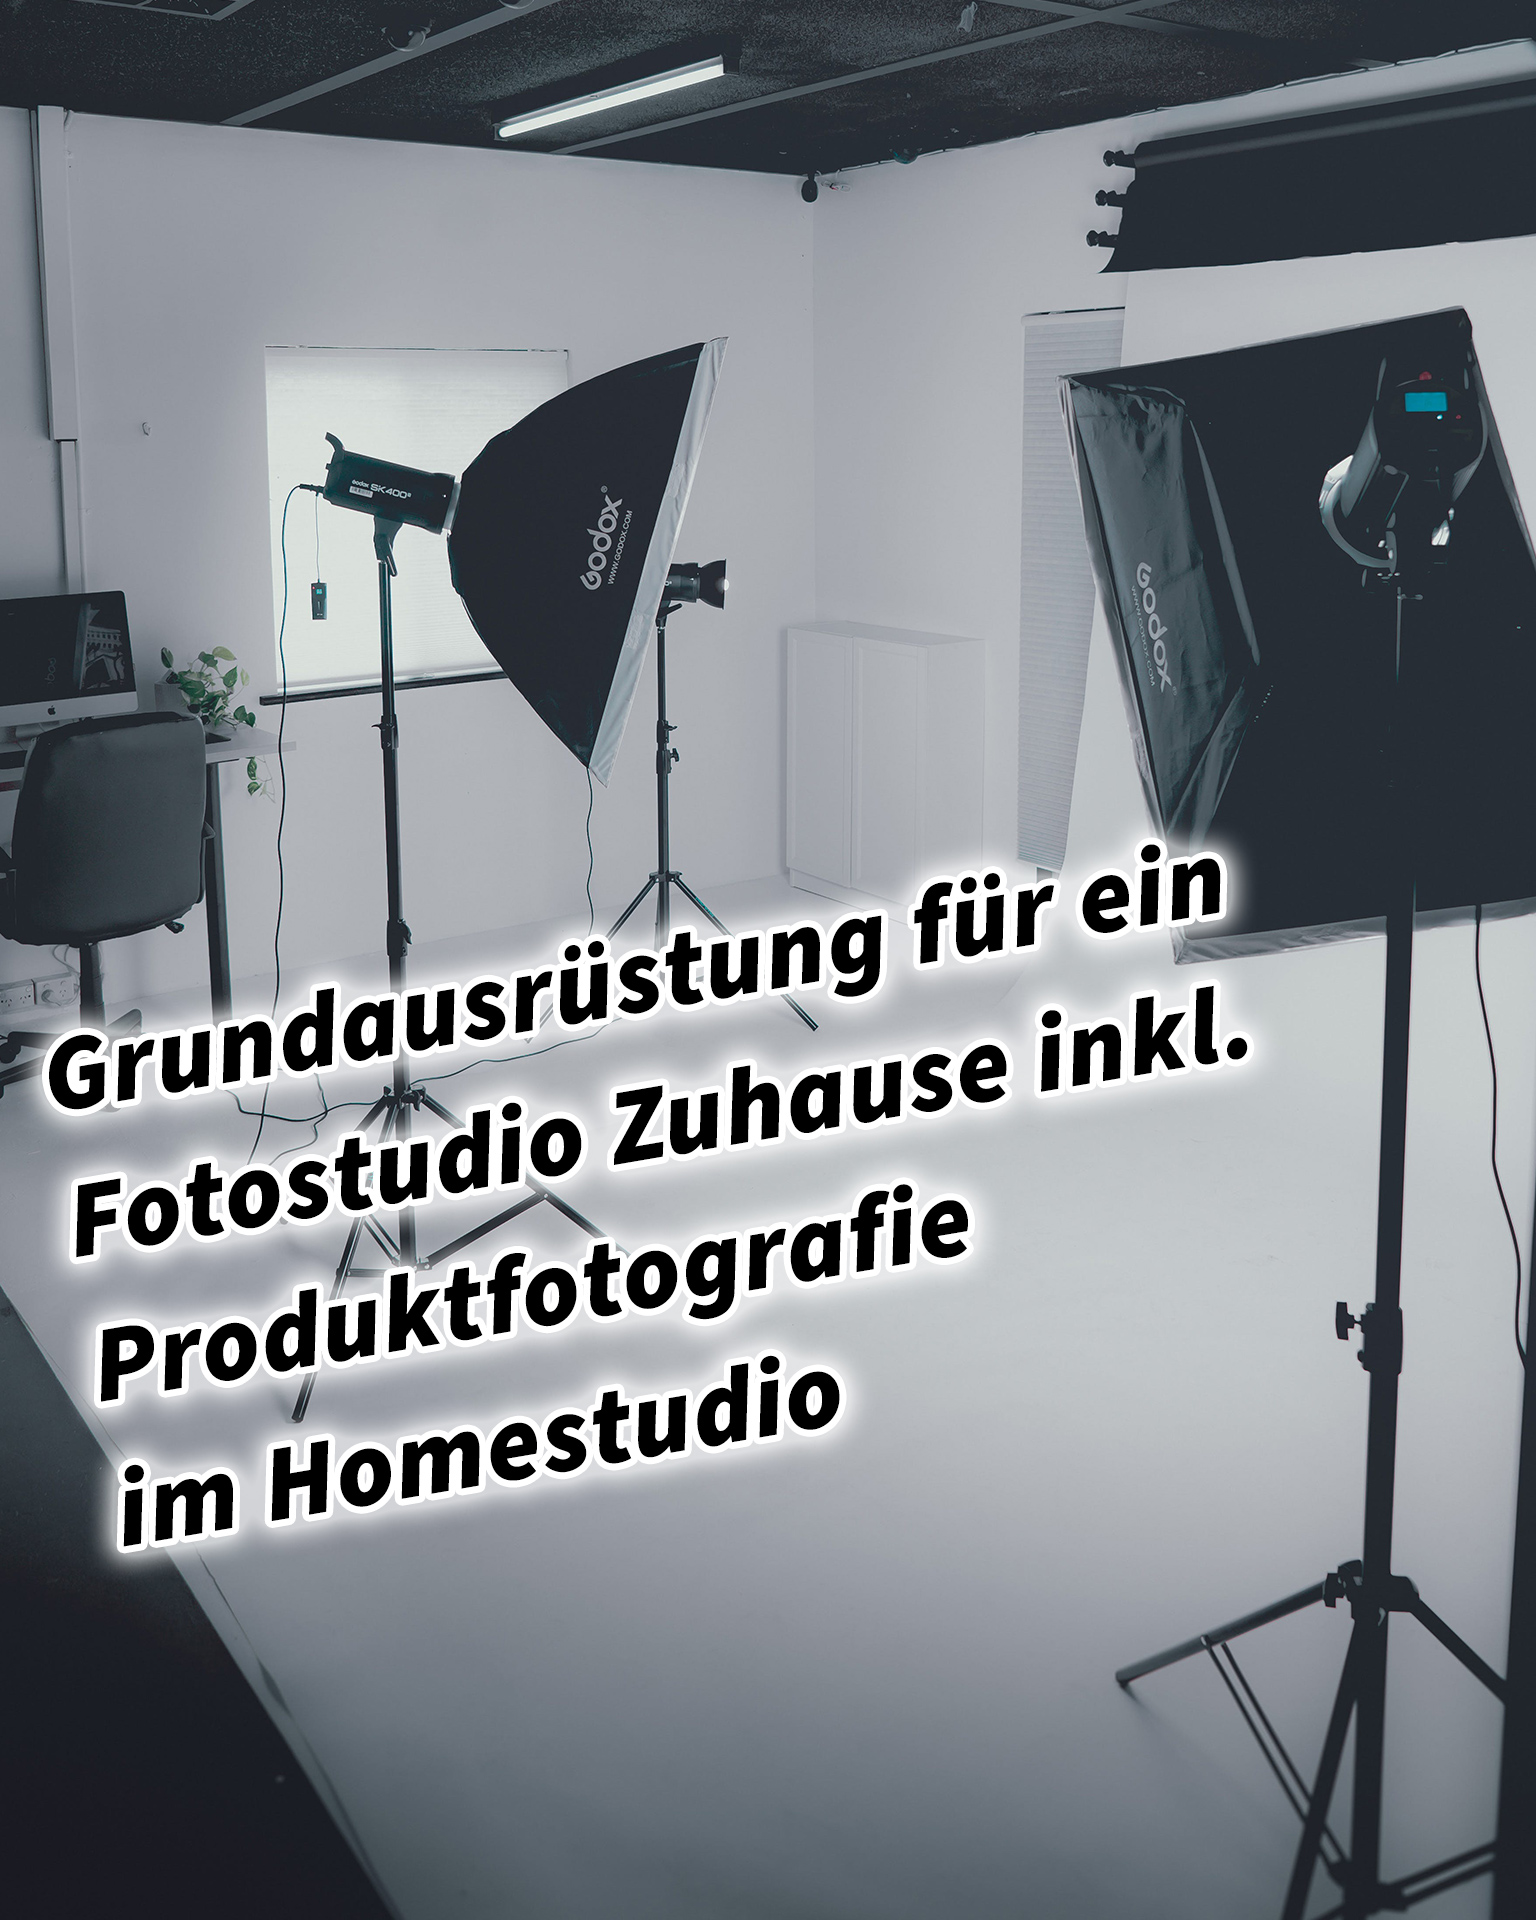 Grundausrüstung für ein Fotostudio Zuhause inkl. Produktfotografie im Homestudio